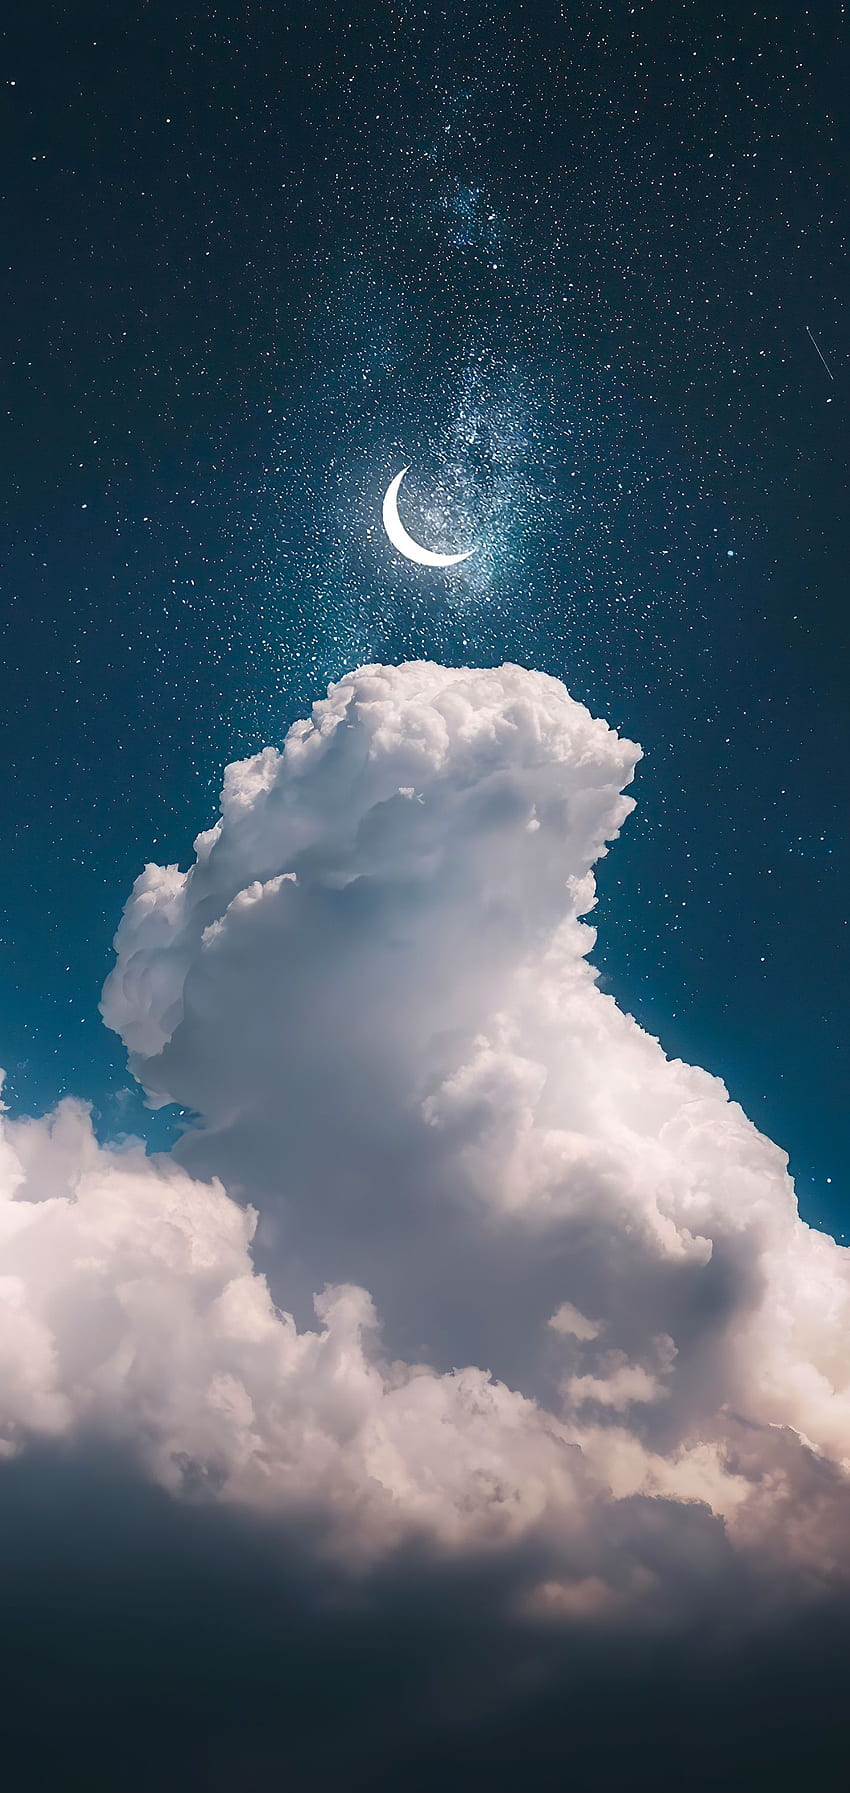 langit malam yang indah untuk iPhone ke, Langit Bintang Biru wallpaper ponsel HD